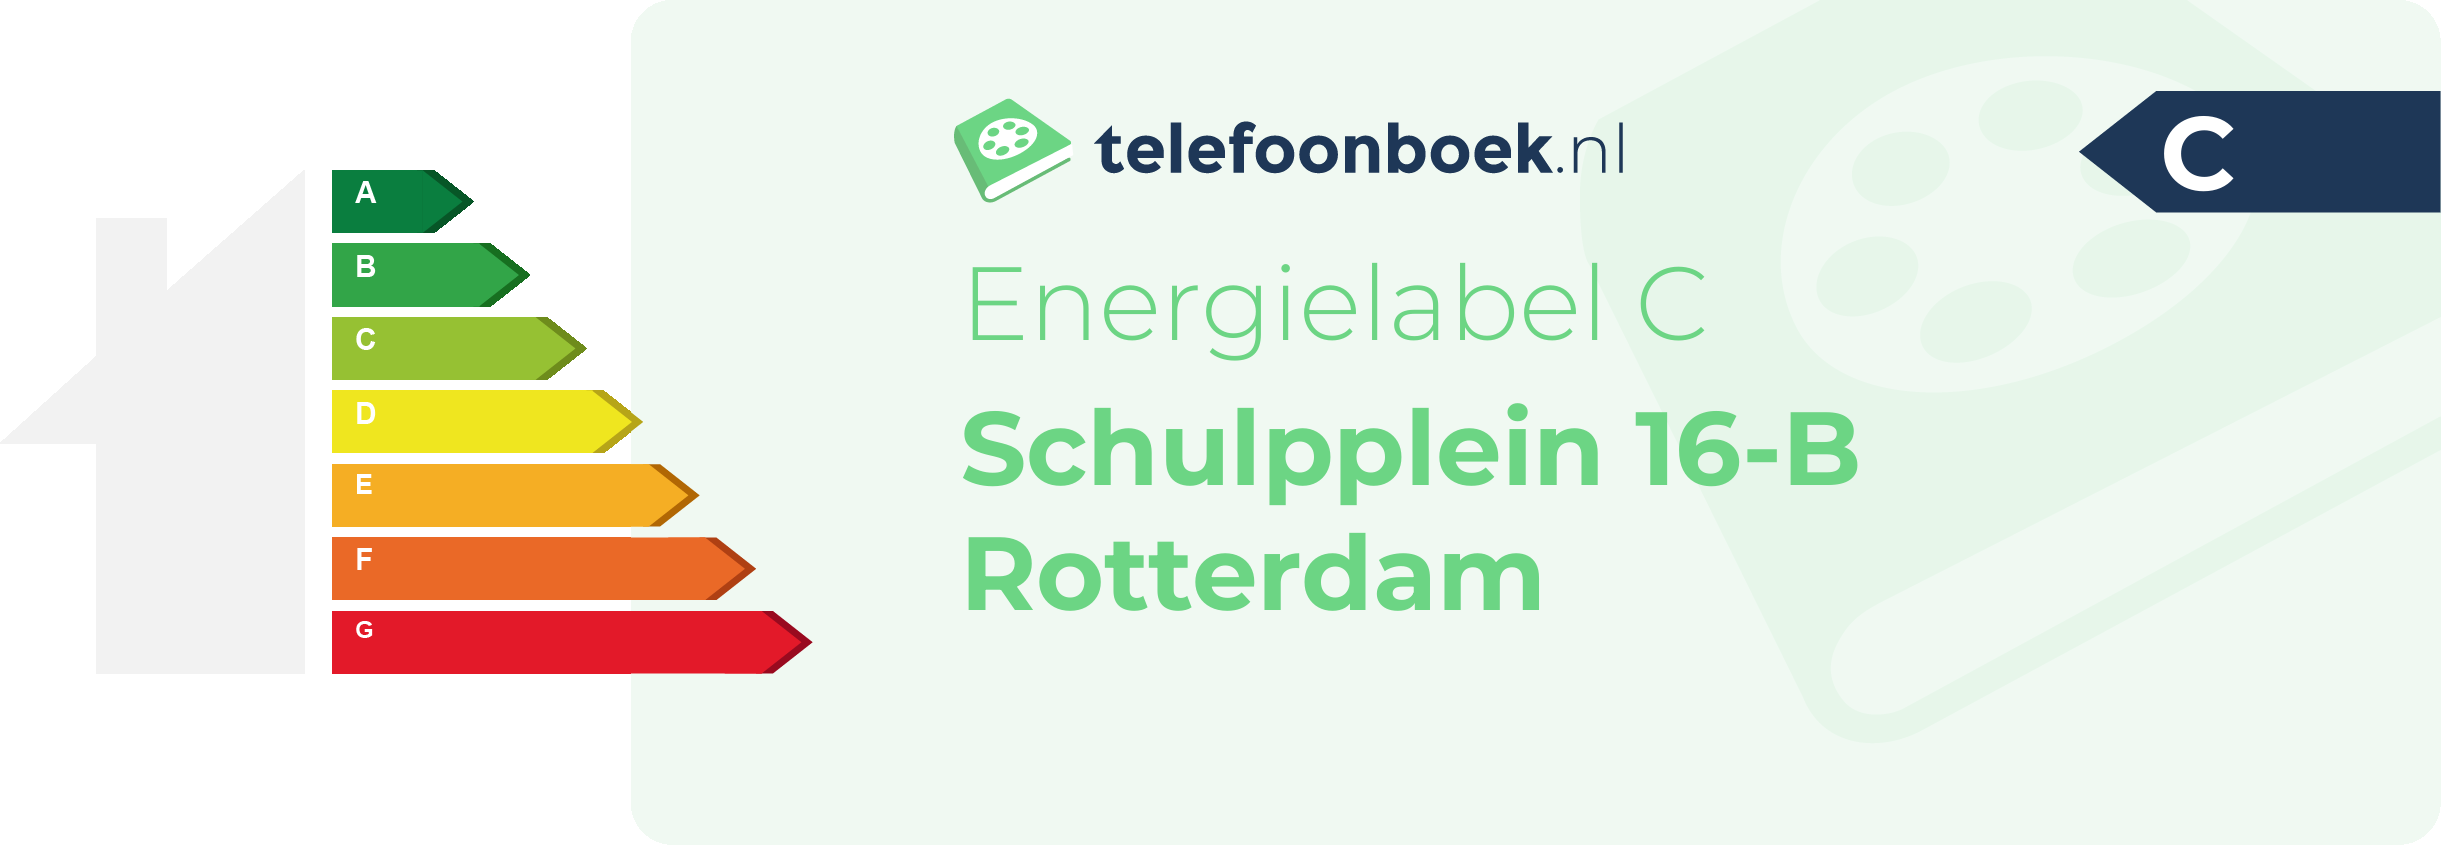 Energielabel Schulpplein 16-B Rotterdam